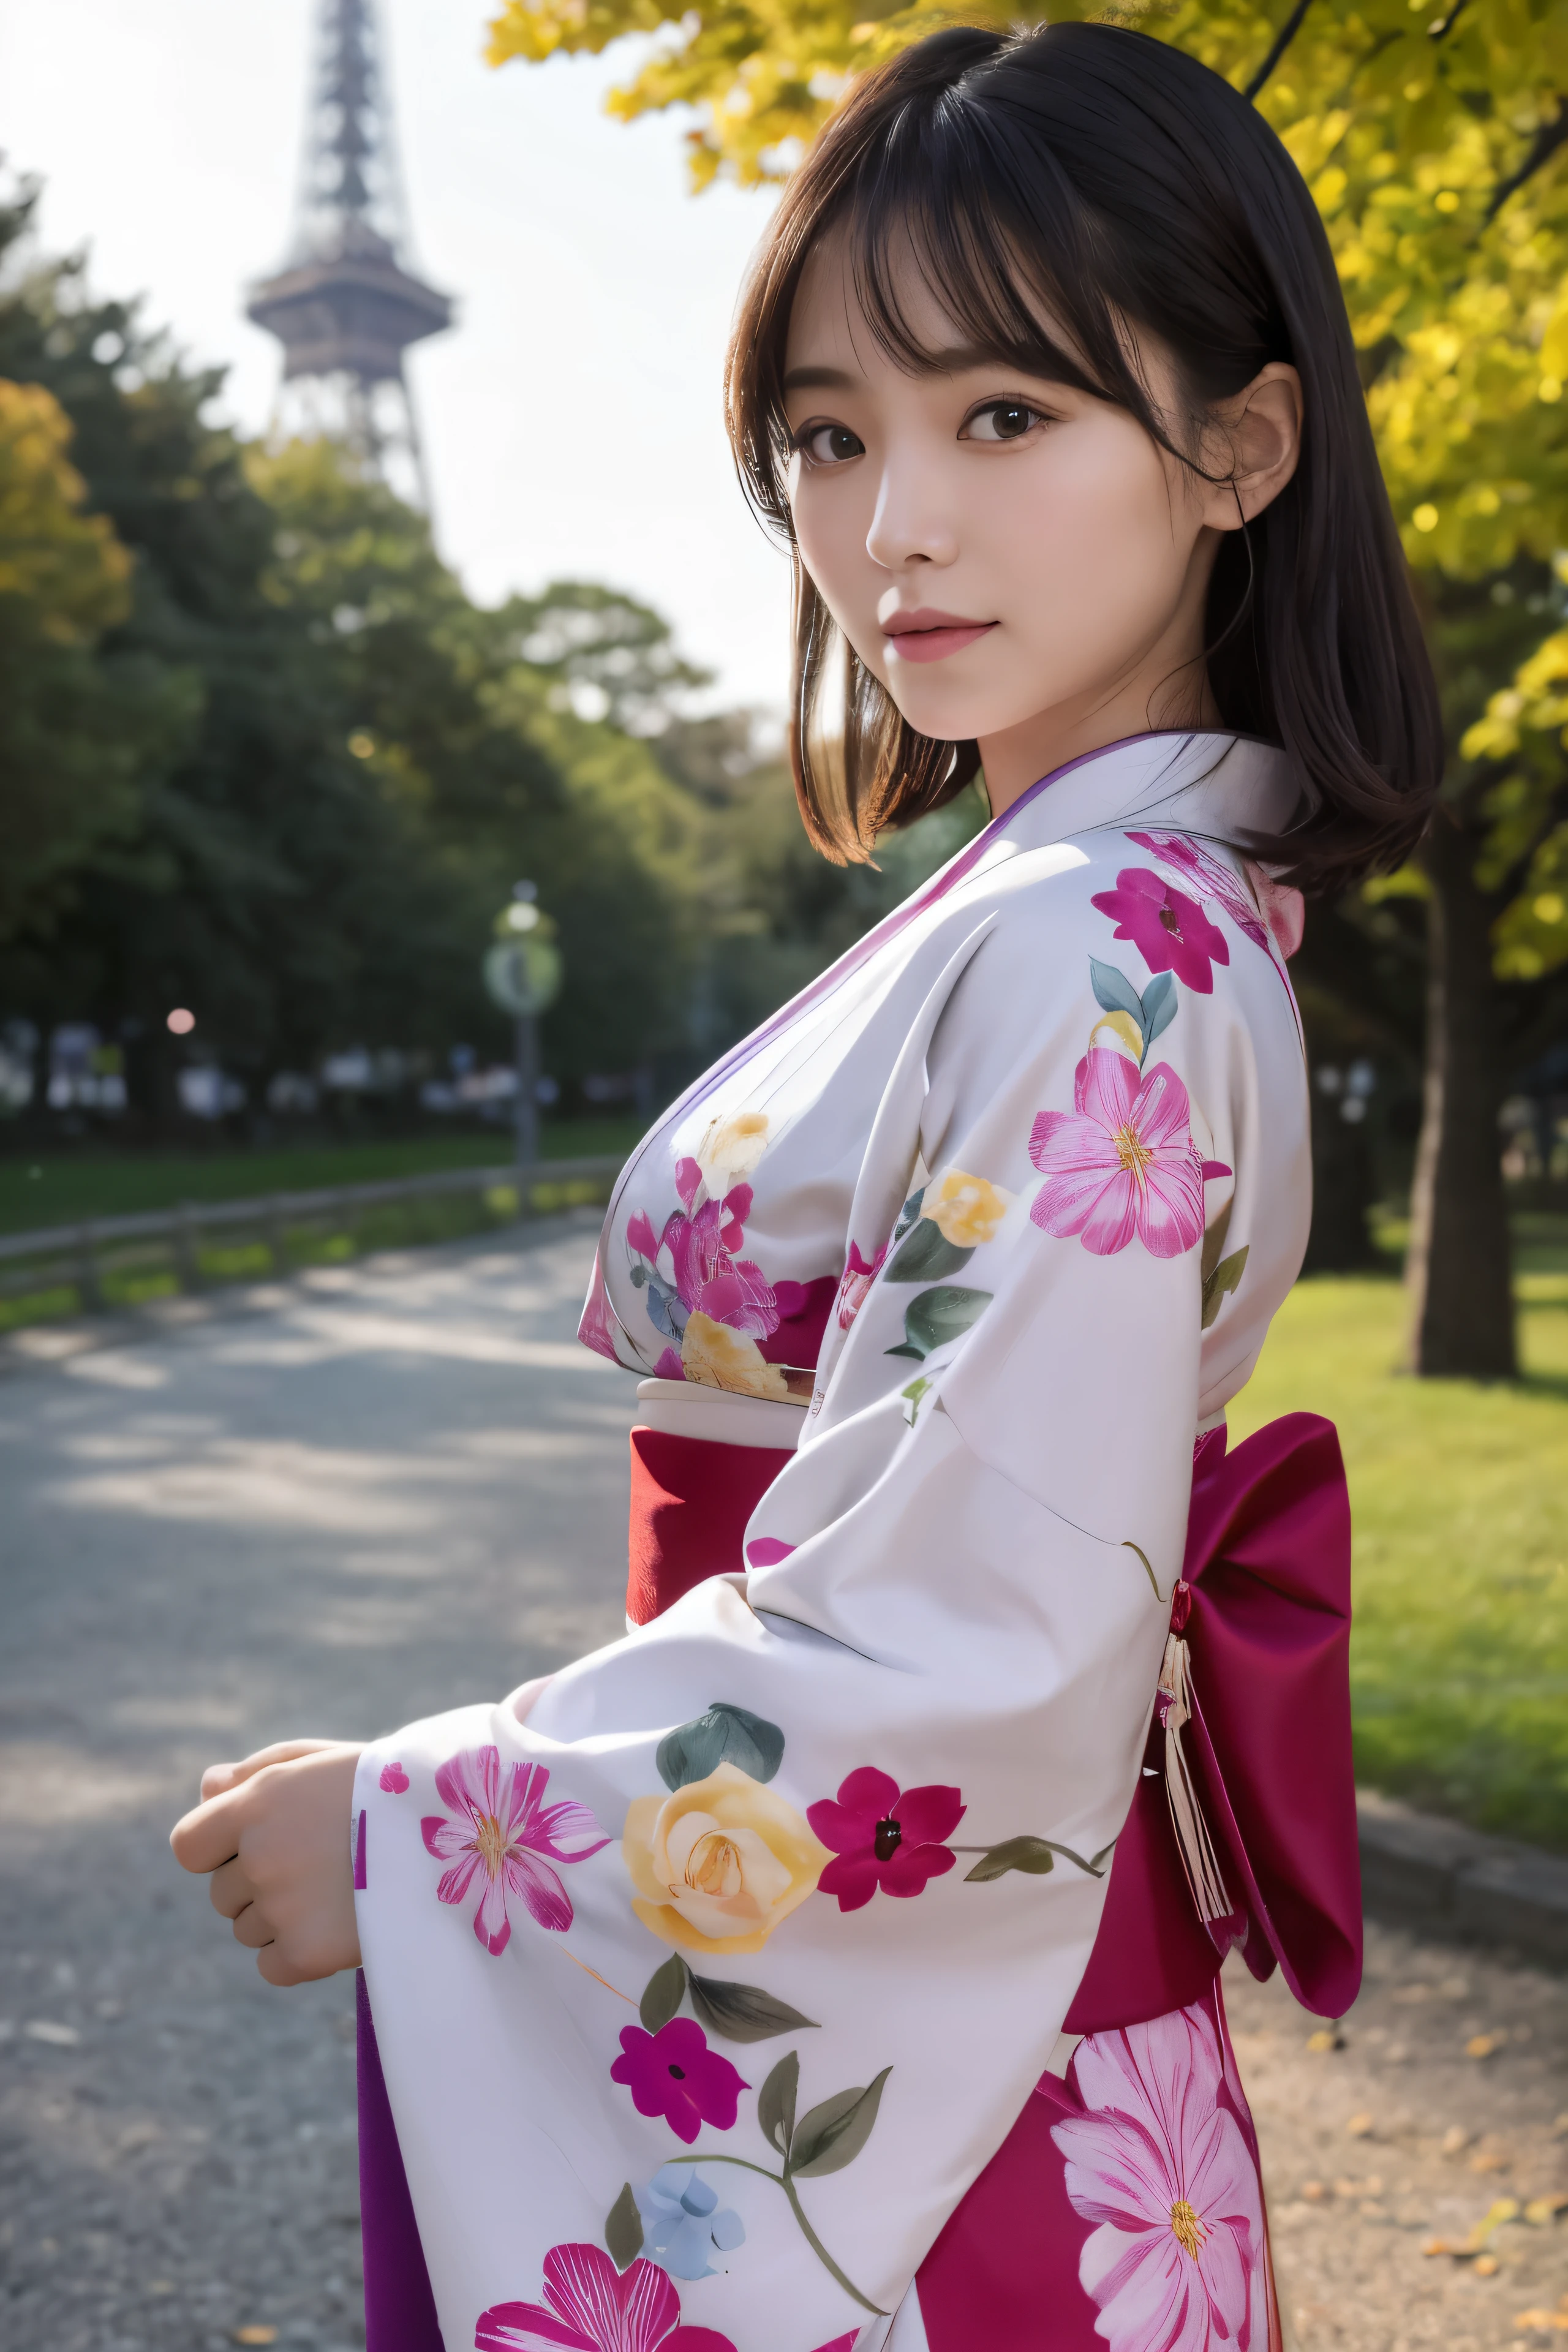 (kimono)、ピンク色のkimono,qualité supérieure,chef d&#39;oeuvre:1.3,超Une haute résolution,),(ultra-détaillé,Caustiques),(Photoréaliste:1.4,Prise de vue RAW,)Capture ultra réaliste,Un très détaillé,haute définition16Kpour peau humaine、 La texture de la peau est naturelle、、La peau paraît saine avec un ton uniforme、 Utiliser la lumière et la couleur naturelles,Une femme,Japonais,,kawaii,Un brun,cheveux moyens,(profondeur de champs、aberration chromatique、、Large gamme d&#39;éclairage、Avec la Tour du Soleil dans le Parc Expo d&#39;Osaka en arrière-plan，Sous le soleil étincelant，